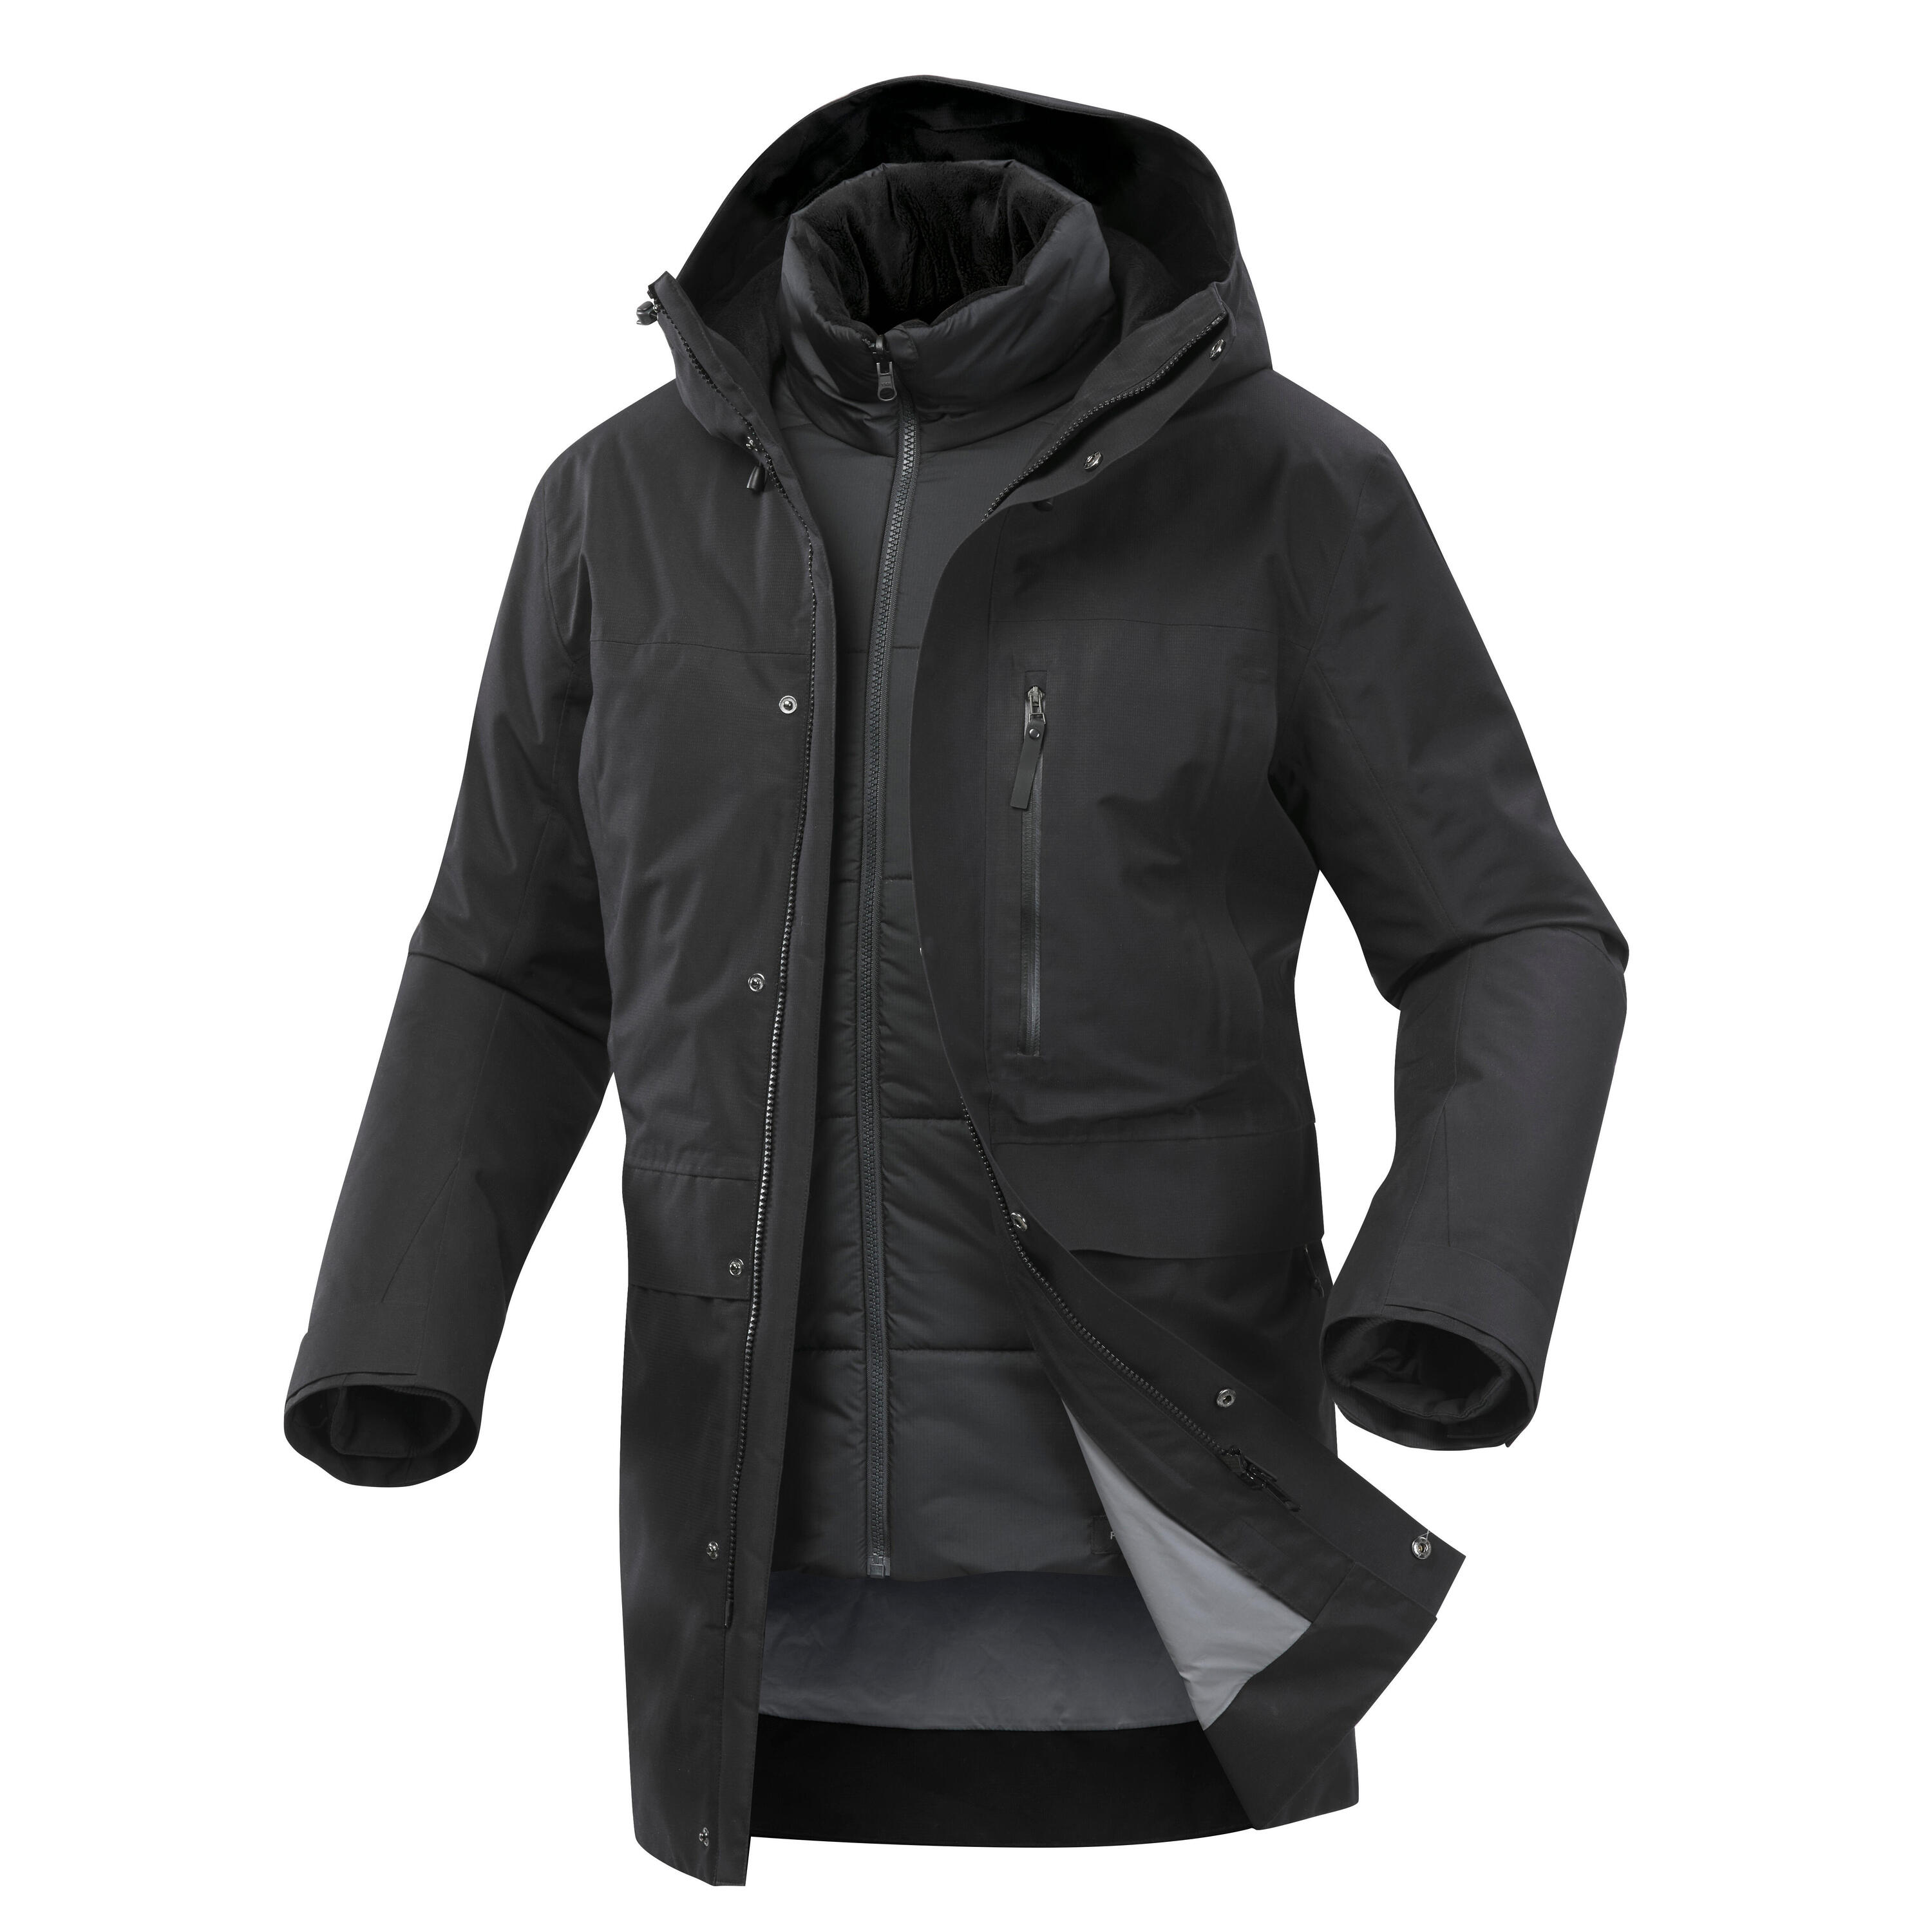 Men's 3-in-1 Waterproof Travel Trekking Jacket Travel 900 Warm -15°C - black  1/20